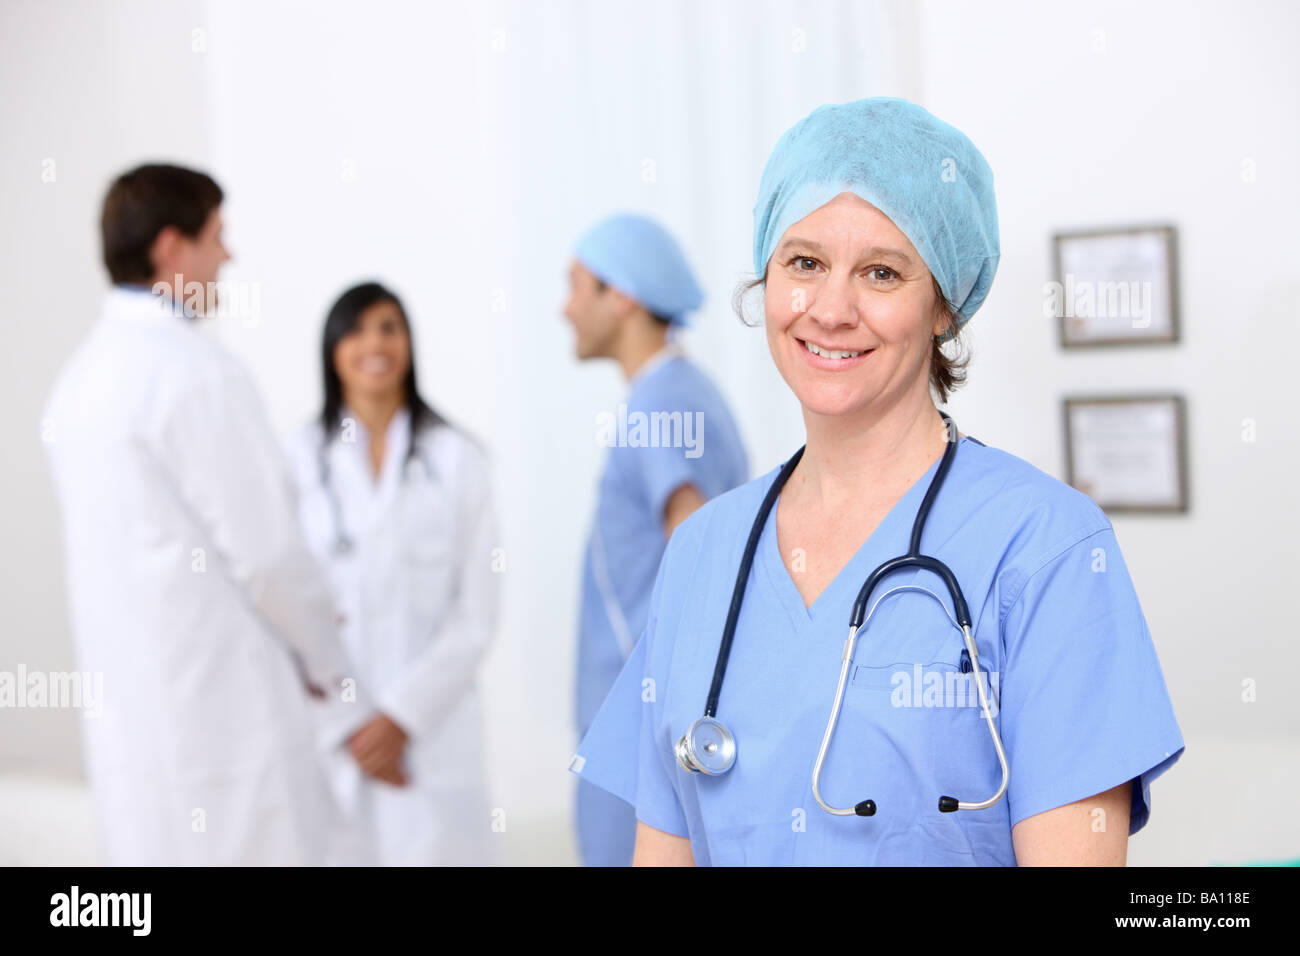 Porträt von Krankenschwester mit Sonstiges medizinisches Personal im Hintergrund Stockfoto